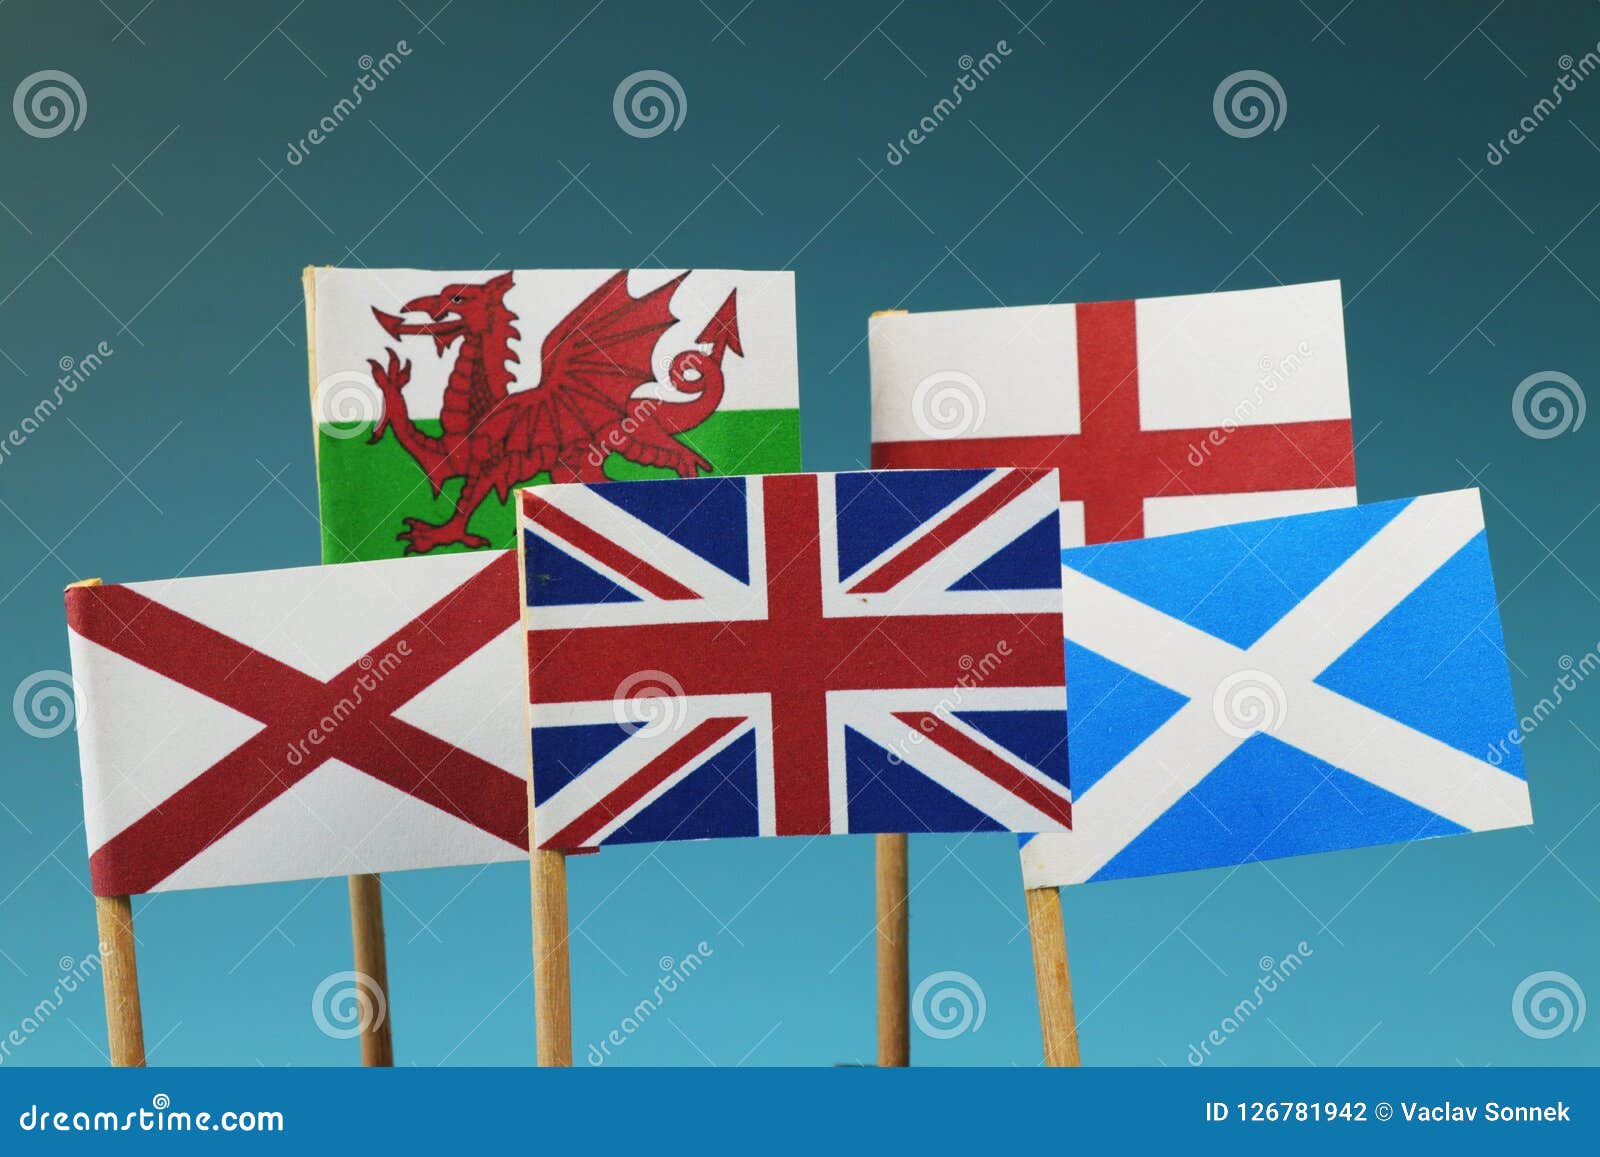 Bandera de Reino Unido Hebilla de Cinturón Bandera Inglaterra Escocia Gales Irlanda del Norte Auténtico Dragon Designs Producto de Marca 